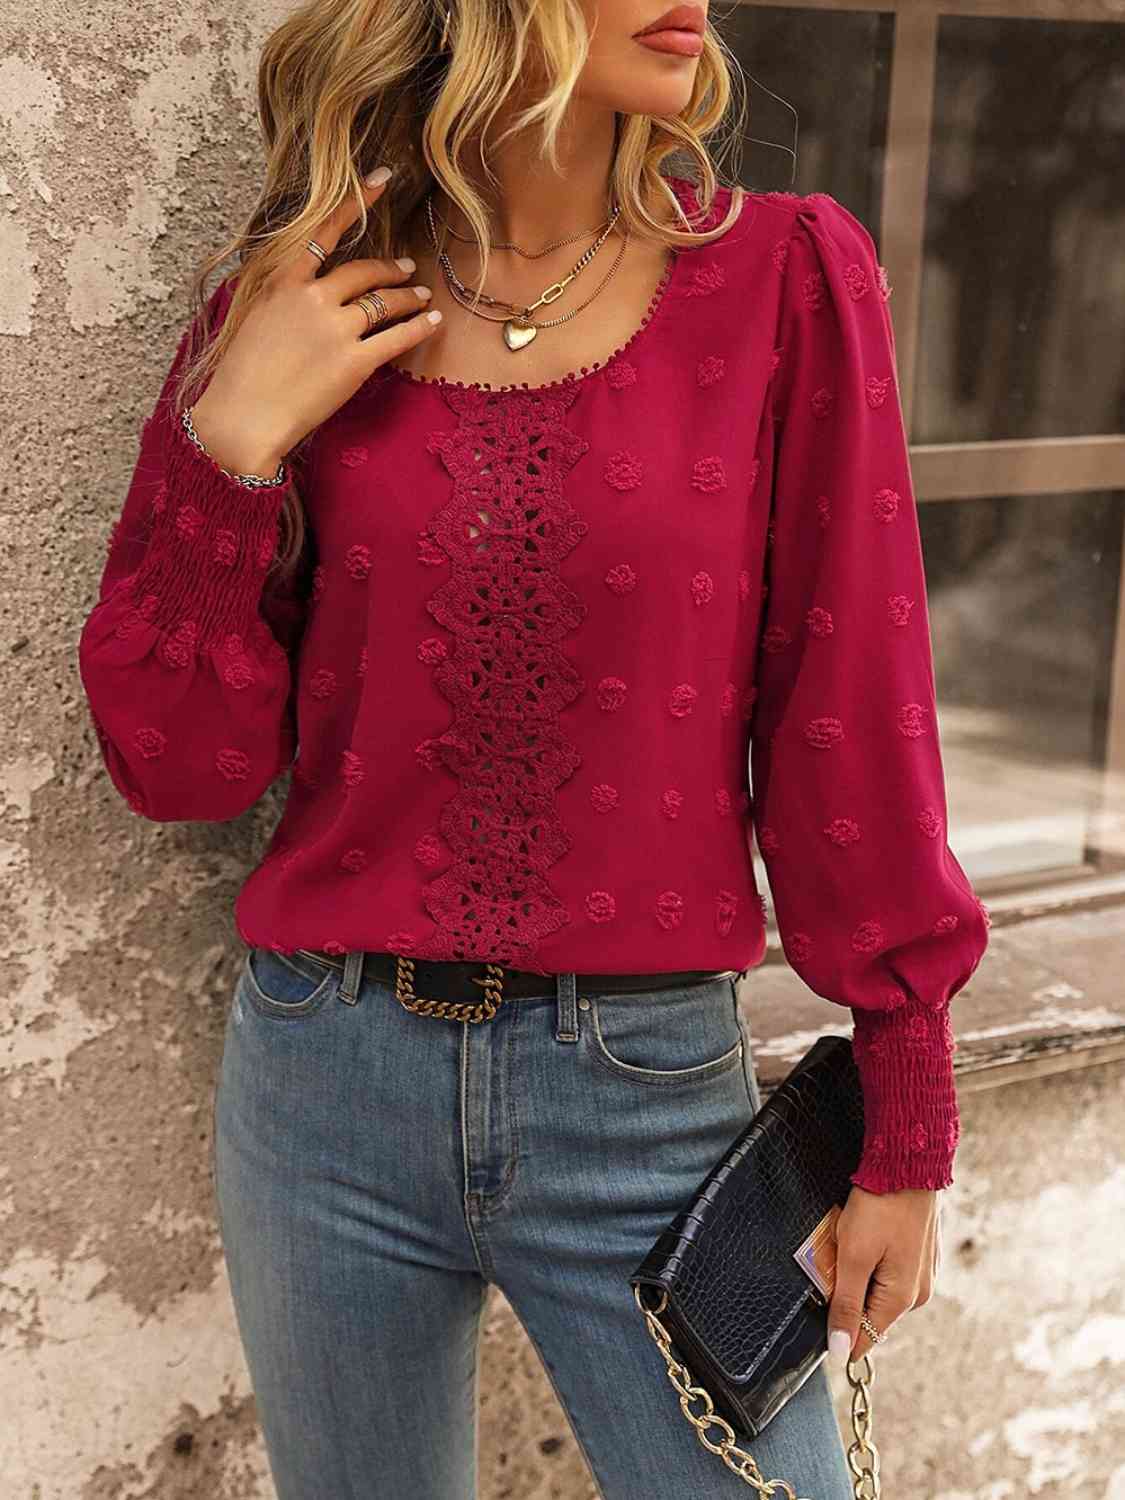 Swiss Dot Lace Detail Blouse (4 Colors) Shirts & Tops Krazy Heart Designs Boutique   